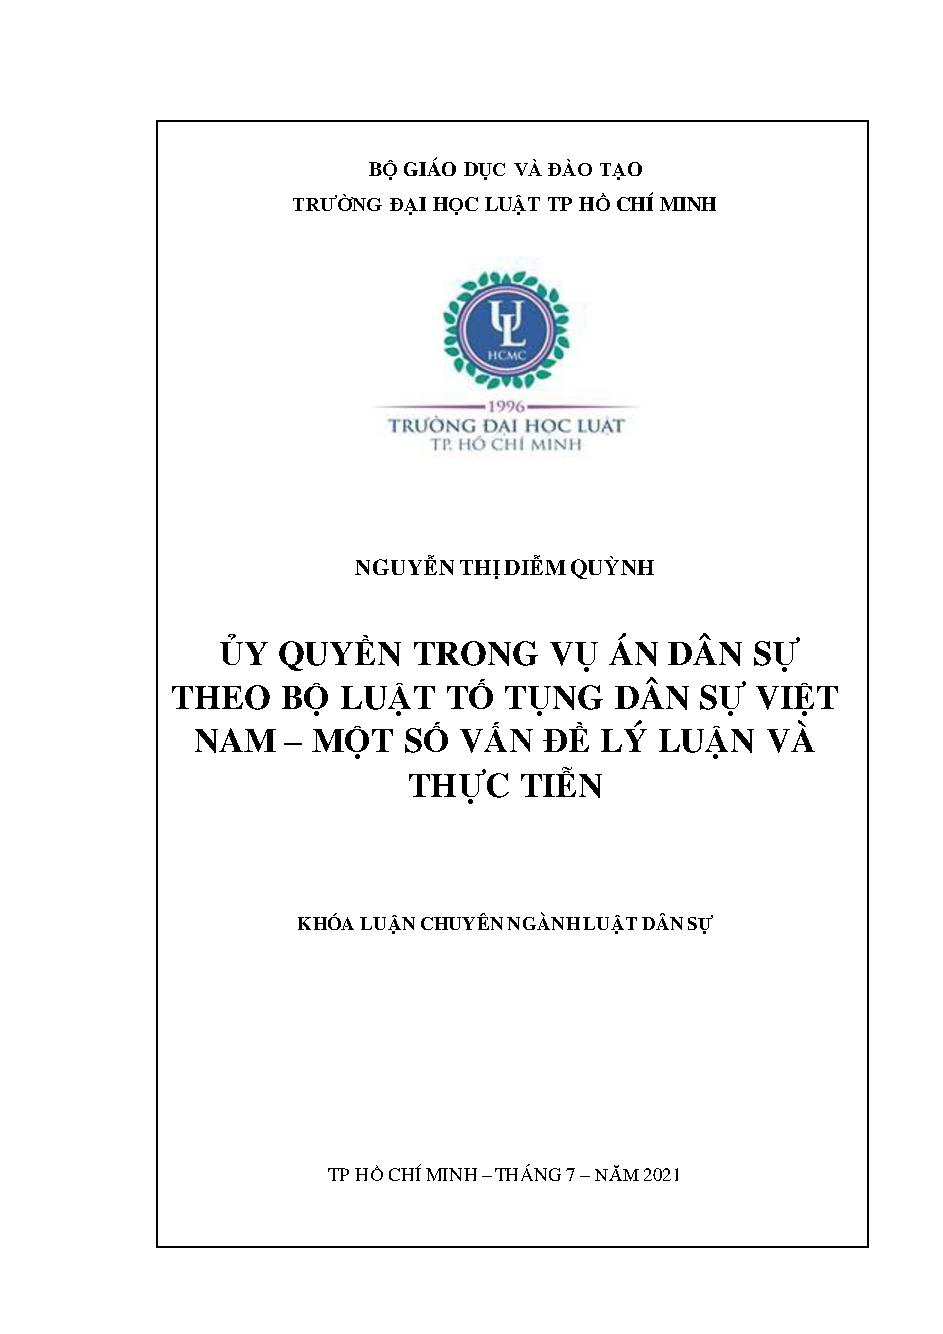 Ủy quyền trong vụ án dân sự theo Bộ luật tố tụng dân sự Việt Nam - Một số vấn đề lý luận và thực tiễn